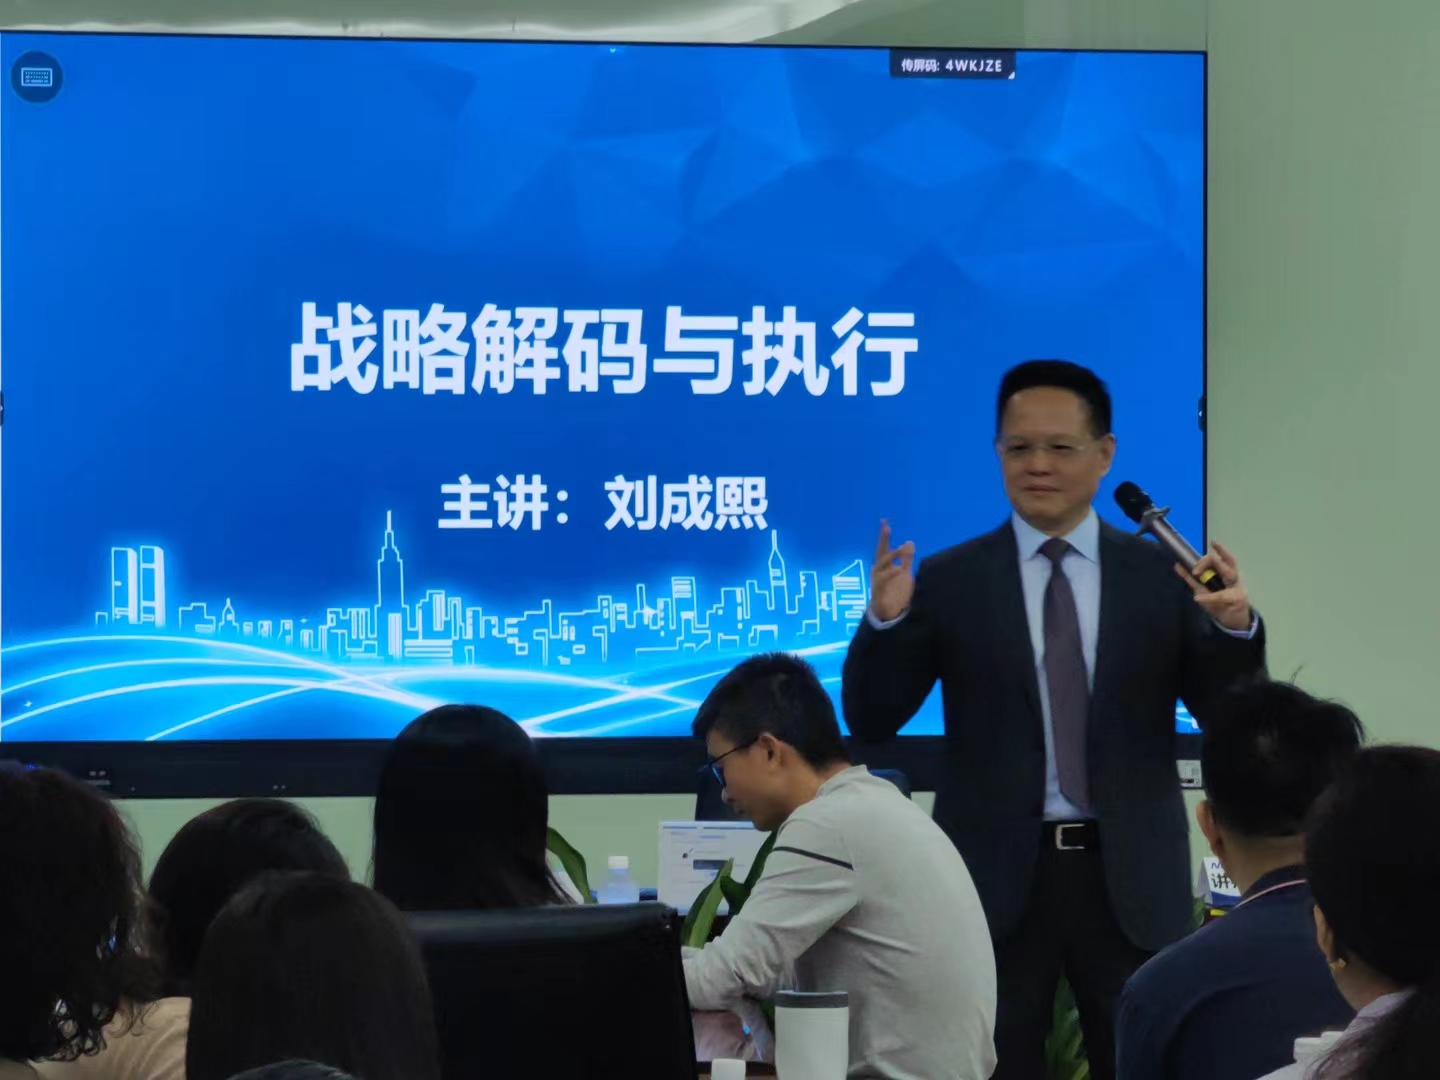 2023年11月24号刘成熙老师为极海微电子股份有限公司成功授课《战略解码与执行》课程